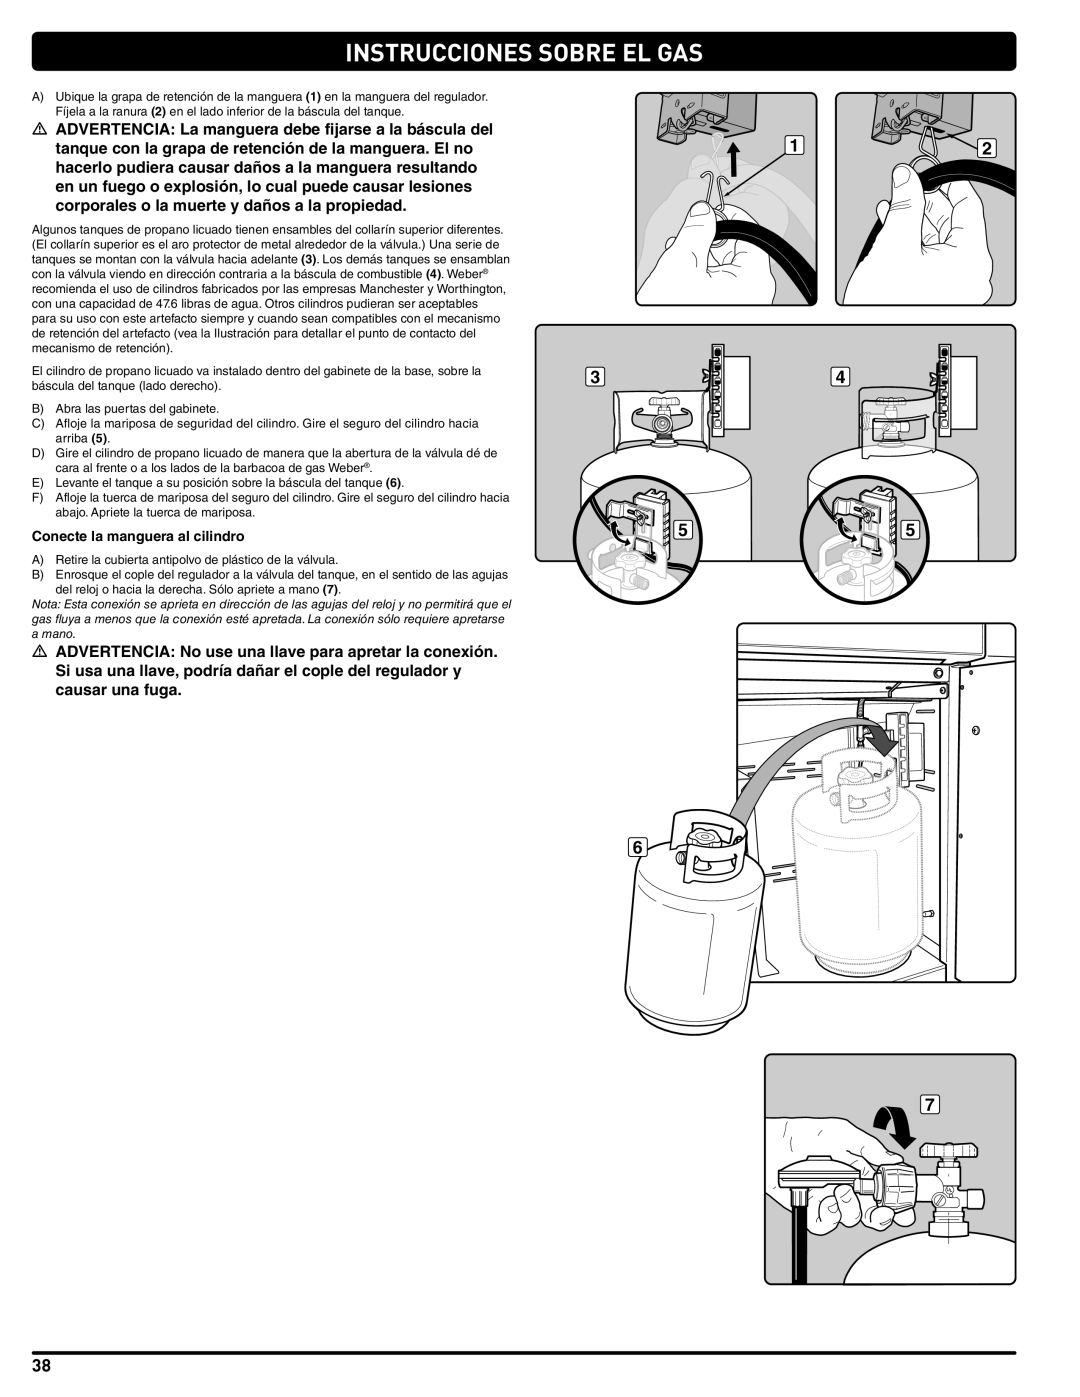 Summit 56214 manual Instrucciones Sobre El Gas, Conecte la manguera al cilindro 